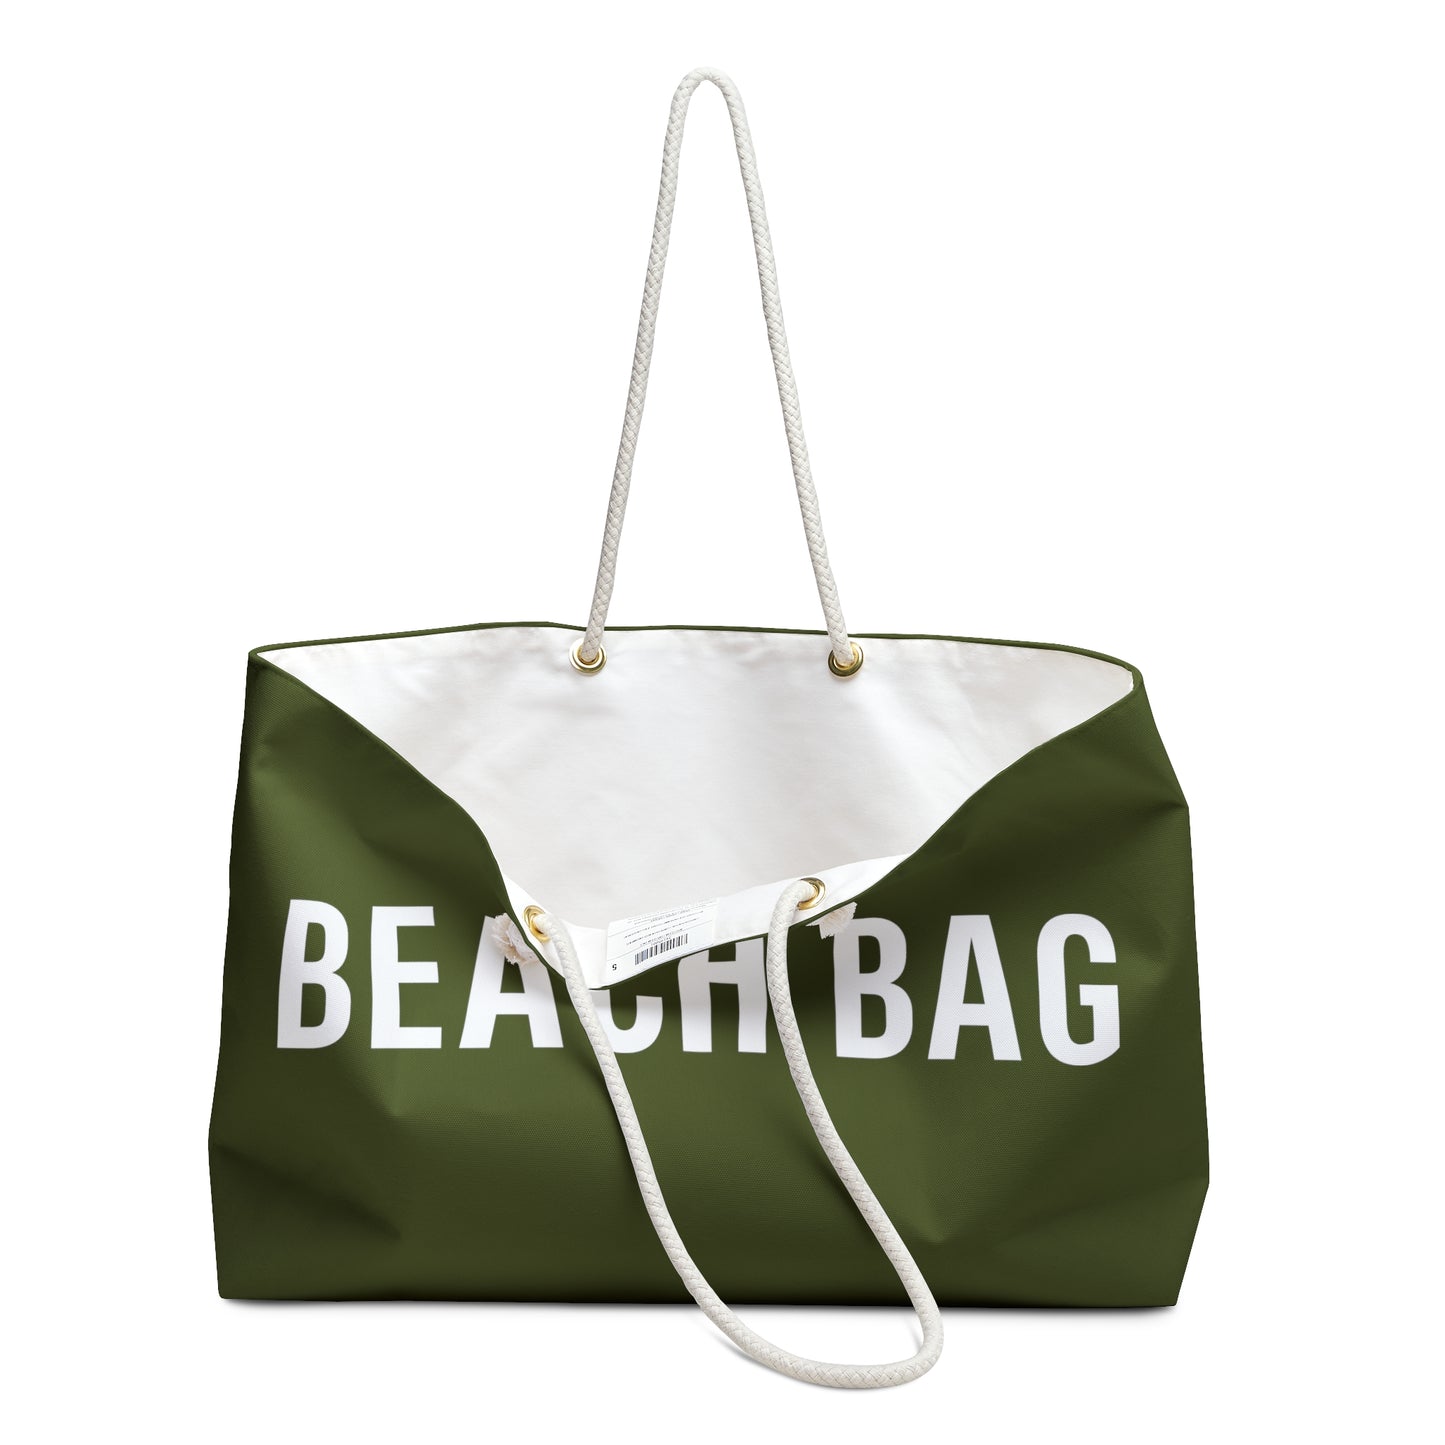 The Original Oversized Beach Bag